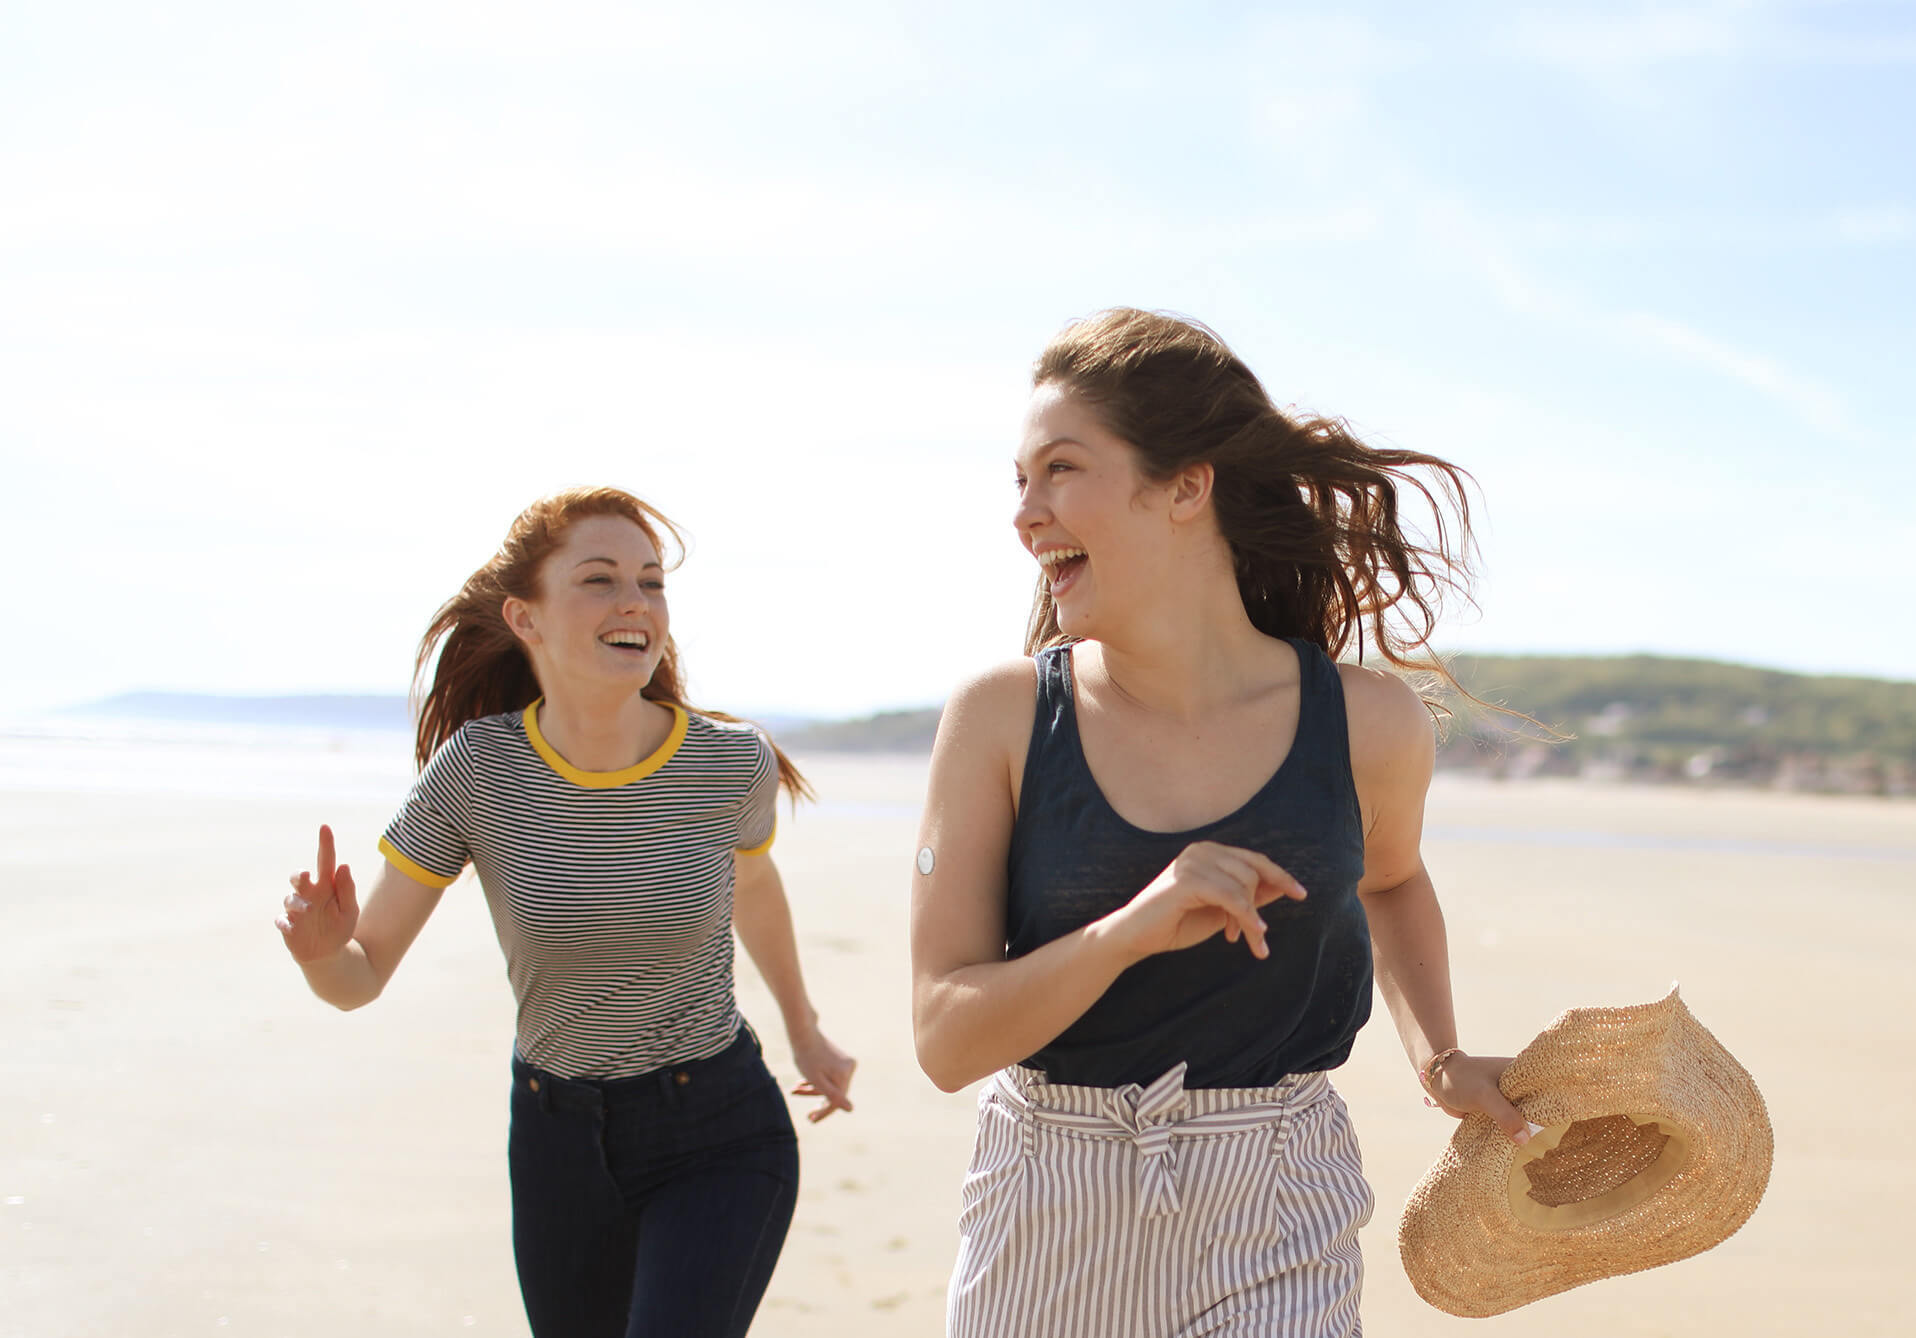 Zwei junge Frauen rennen am Strand und lachen.